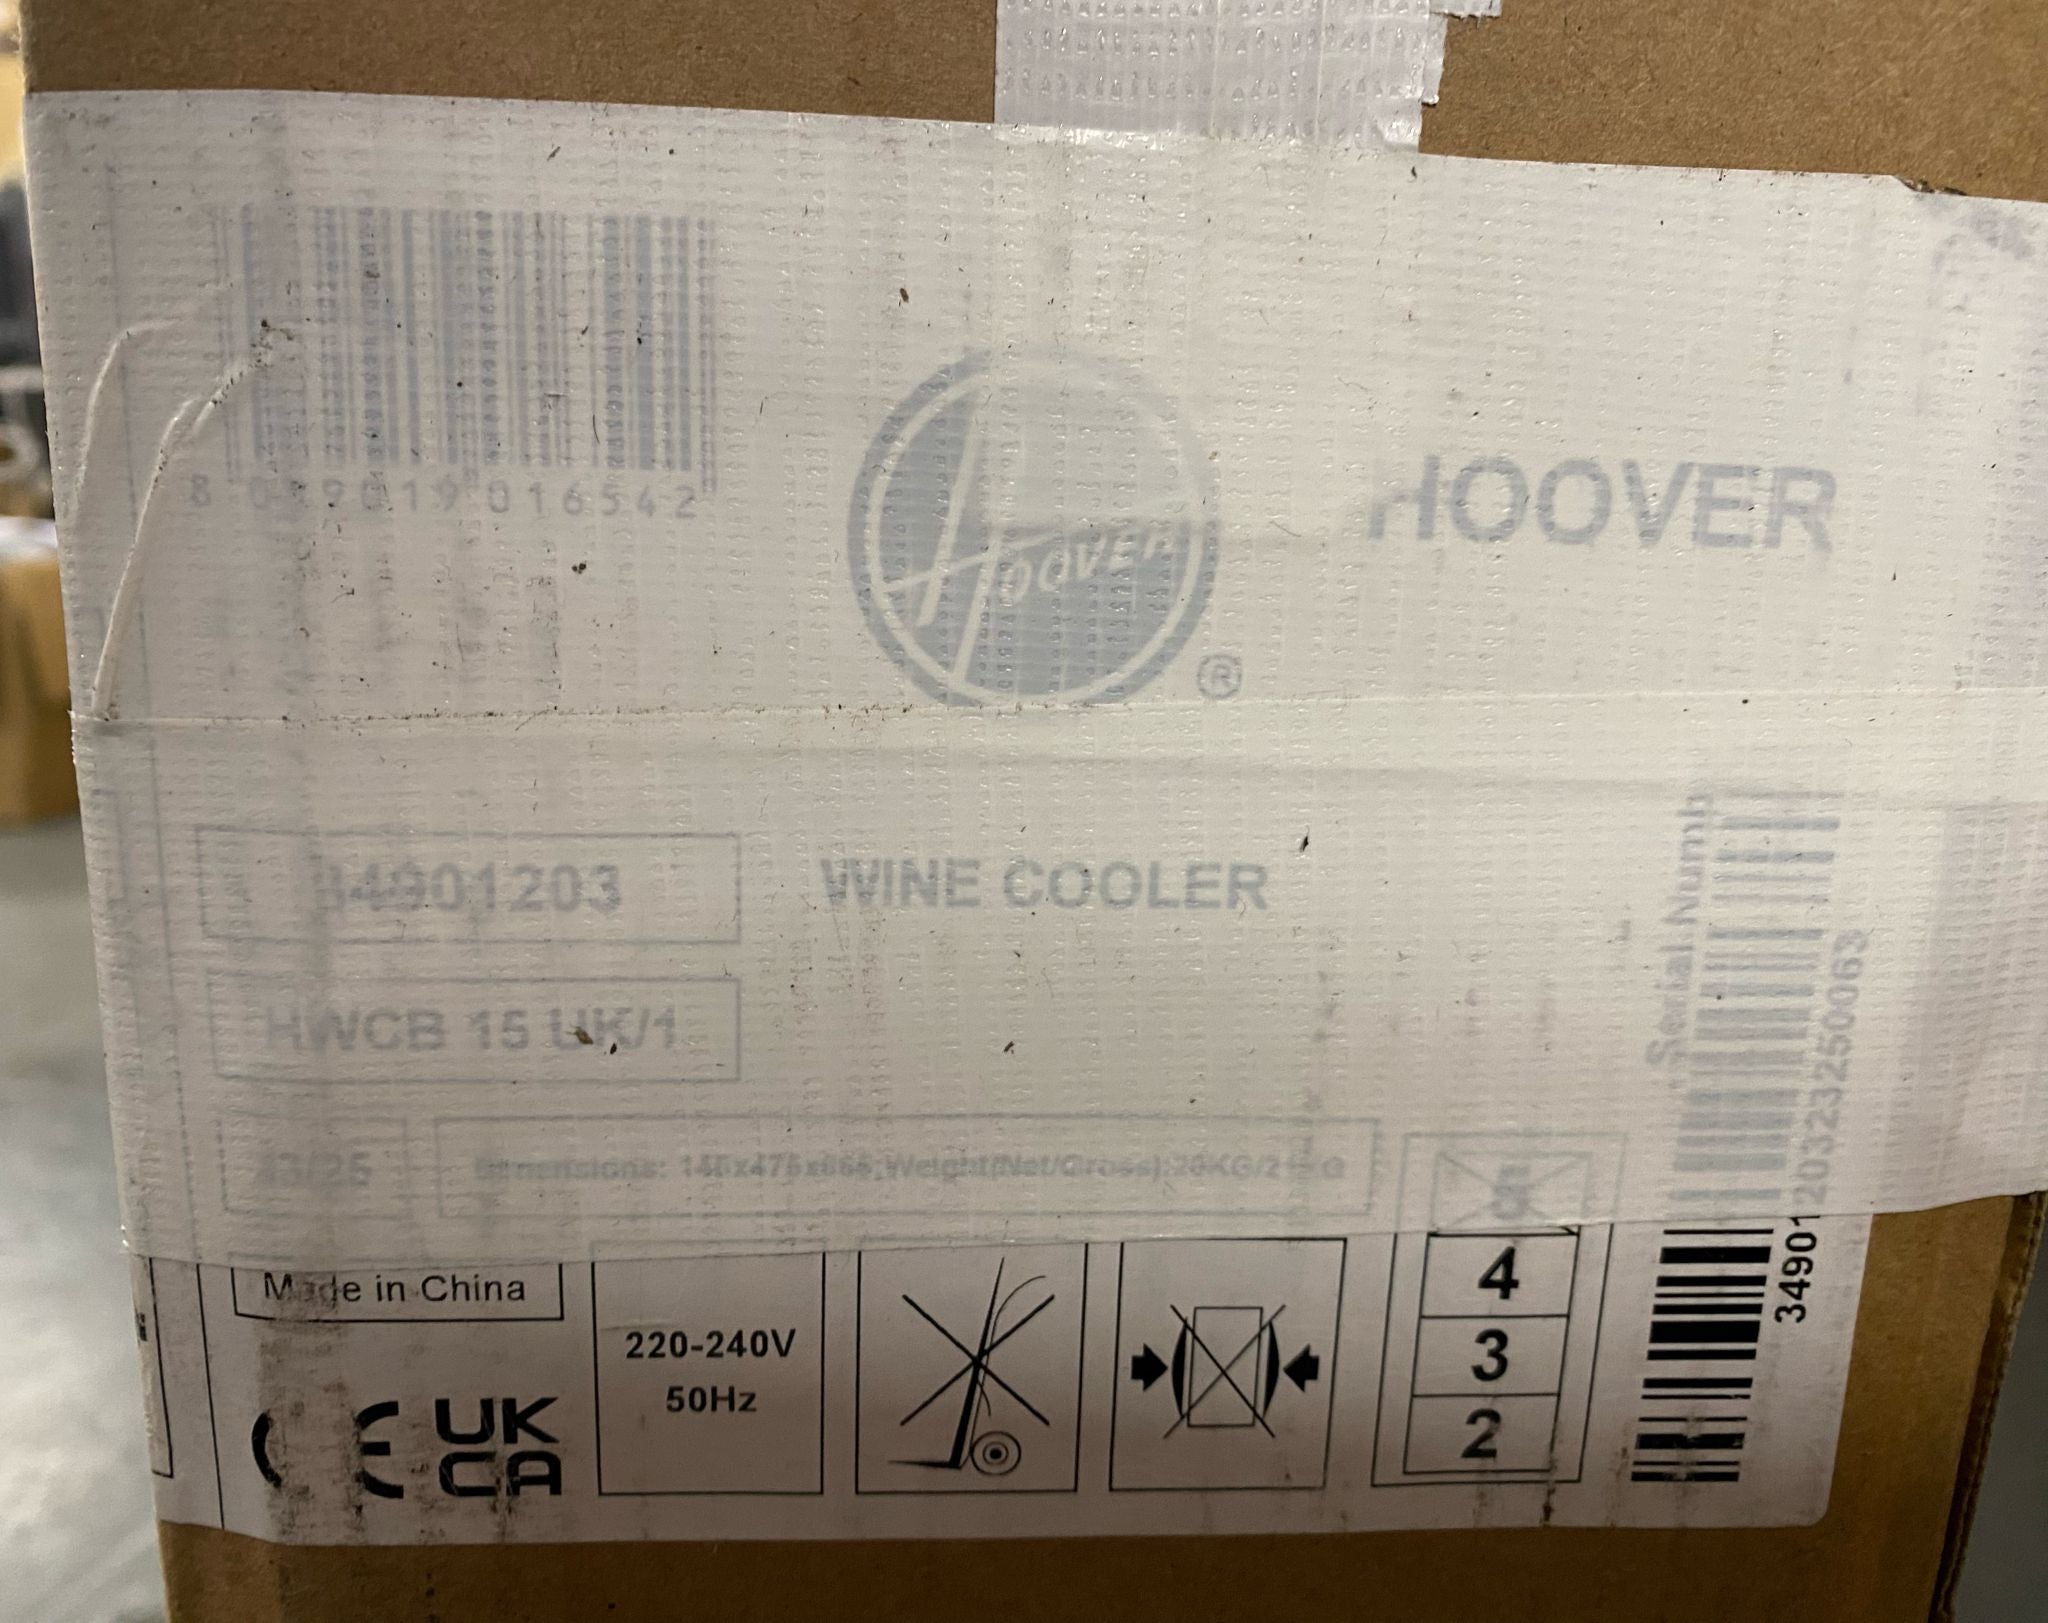 Hoover HWCB15 UK/1 Wine cooler - Black 6542D